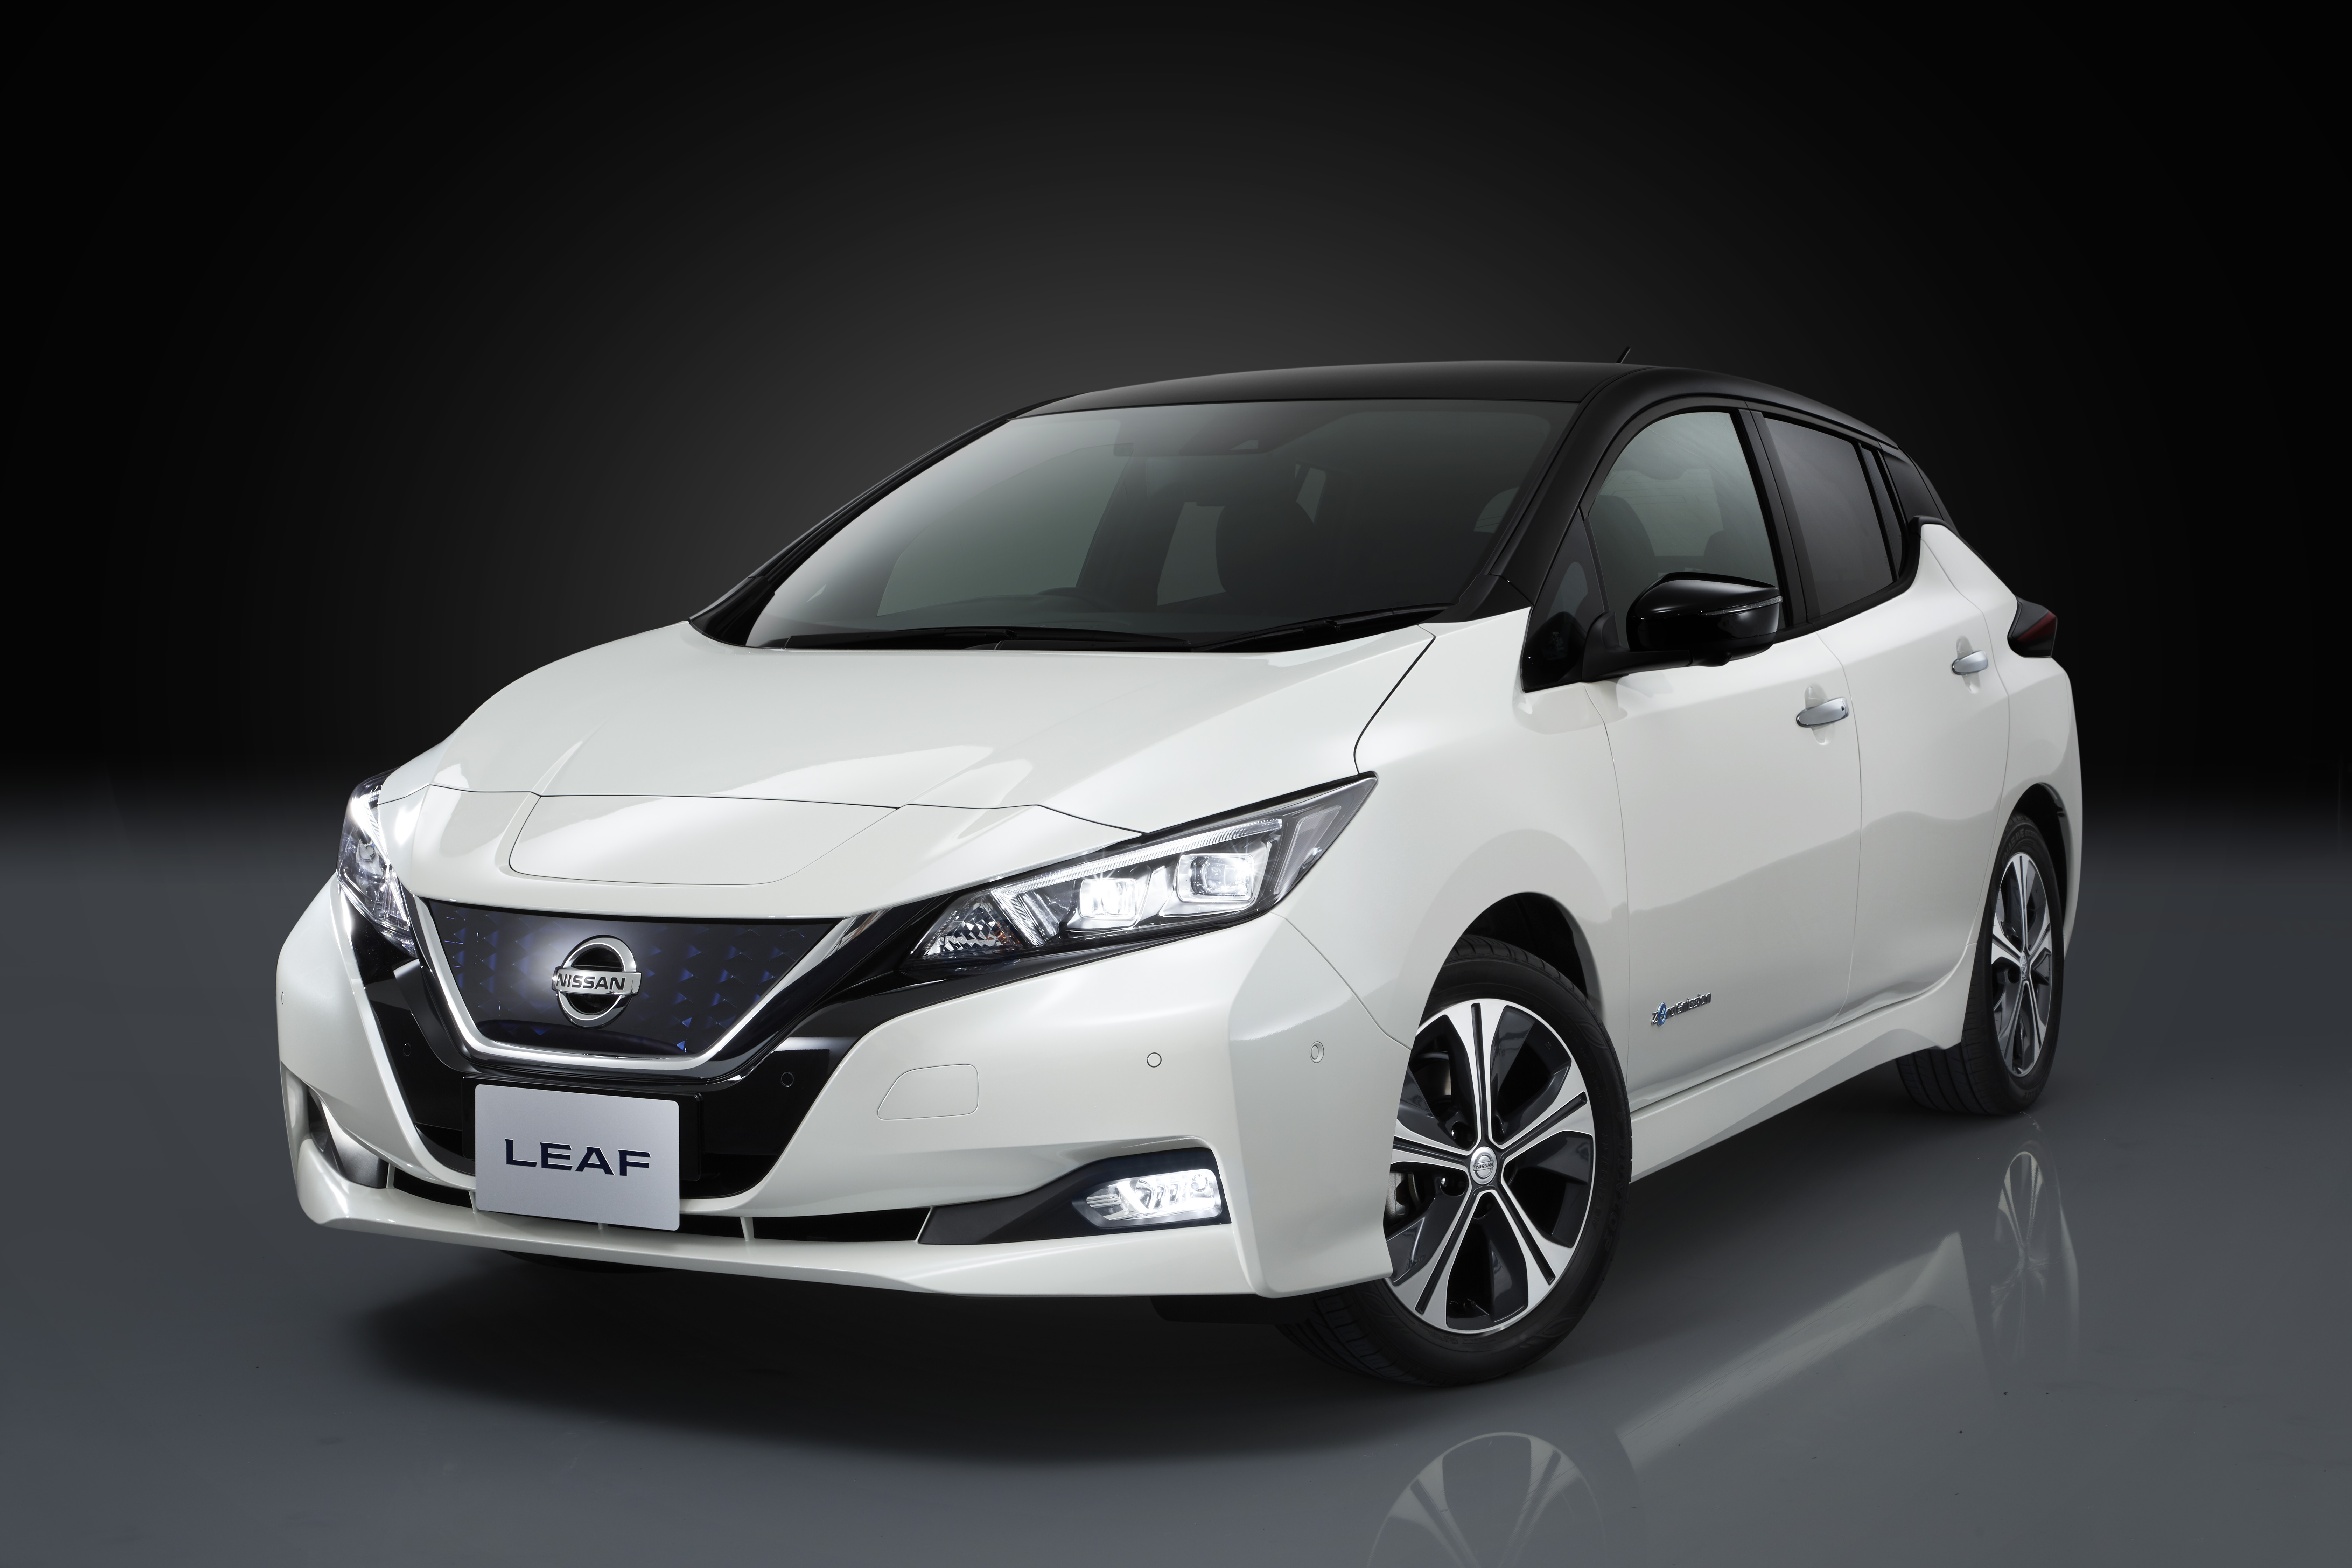  Nuova Nissan LEAF: innovazione nella mobilità elettrica e tecnologia ProPILOT